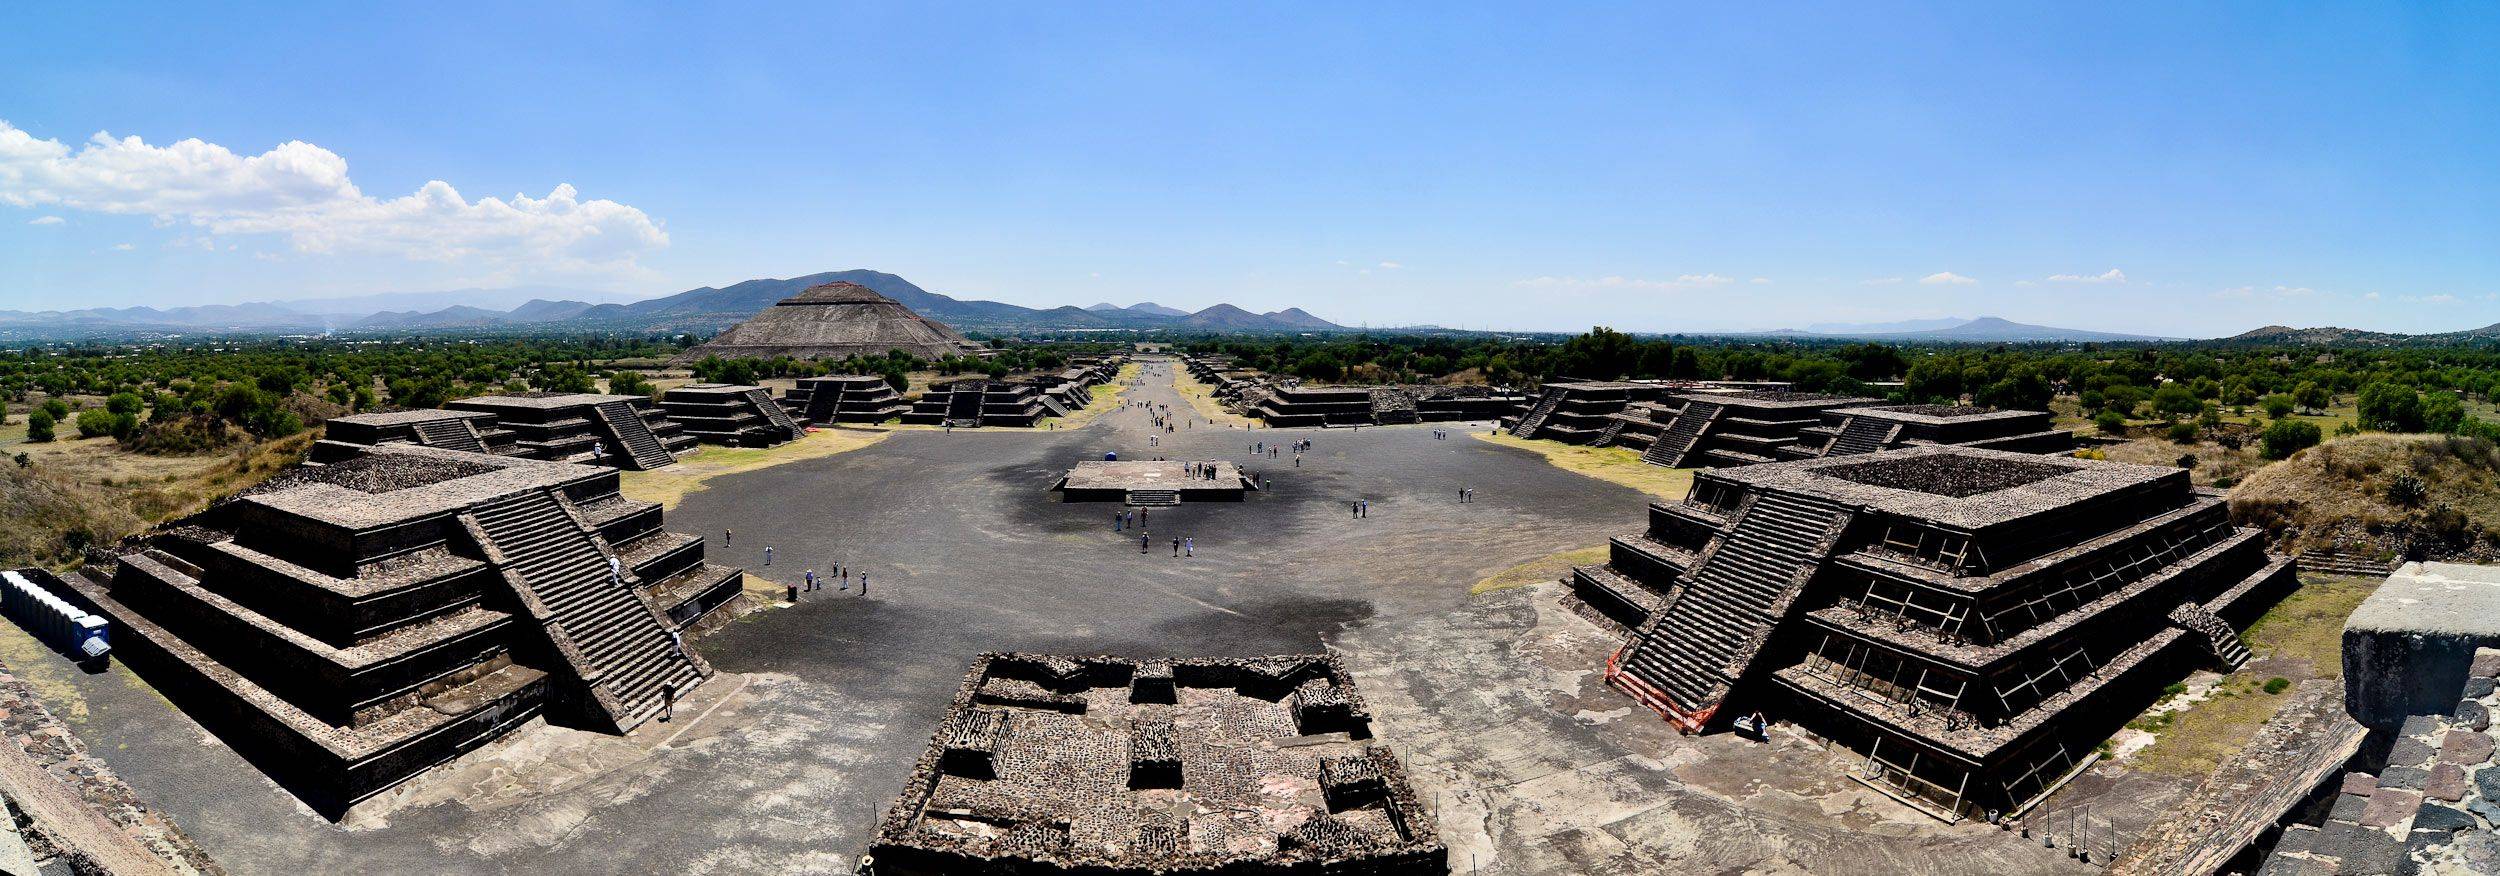 Visita a la Ciudad de México y sus monumentos